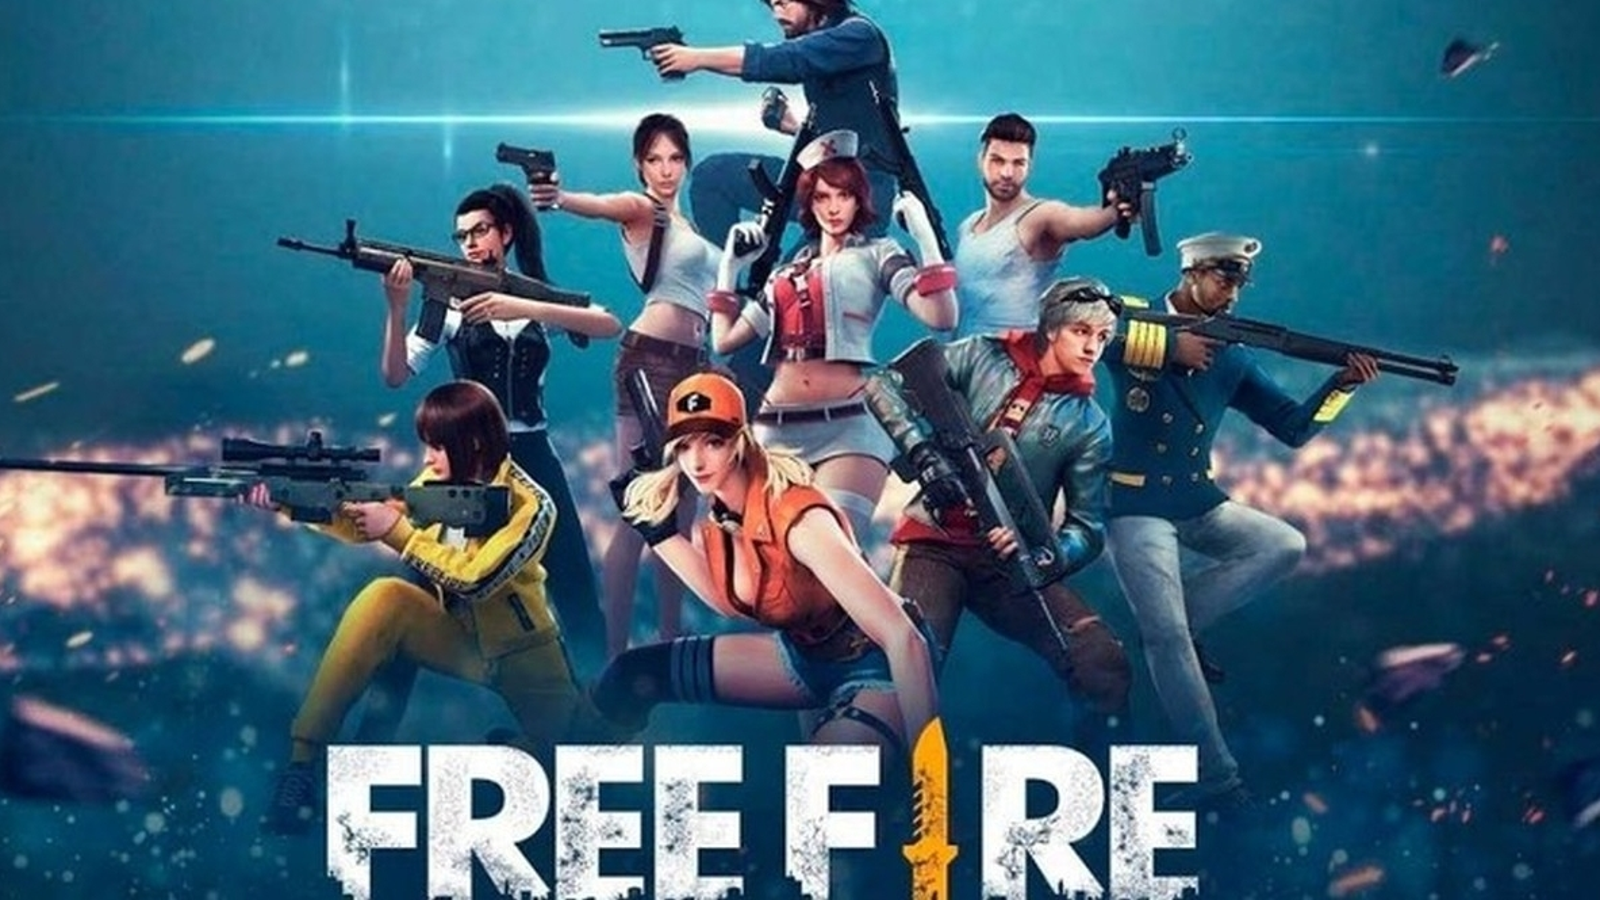 Fuzil de precisão no Free Fire: tudo sobre a arma no jogo